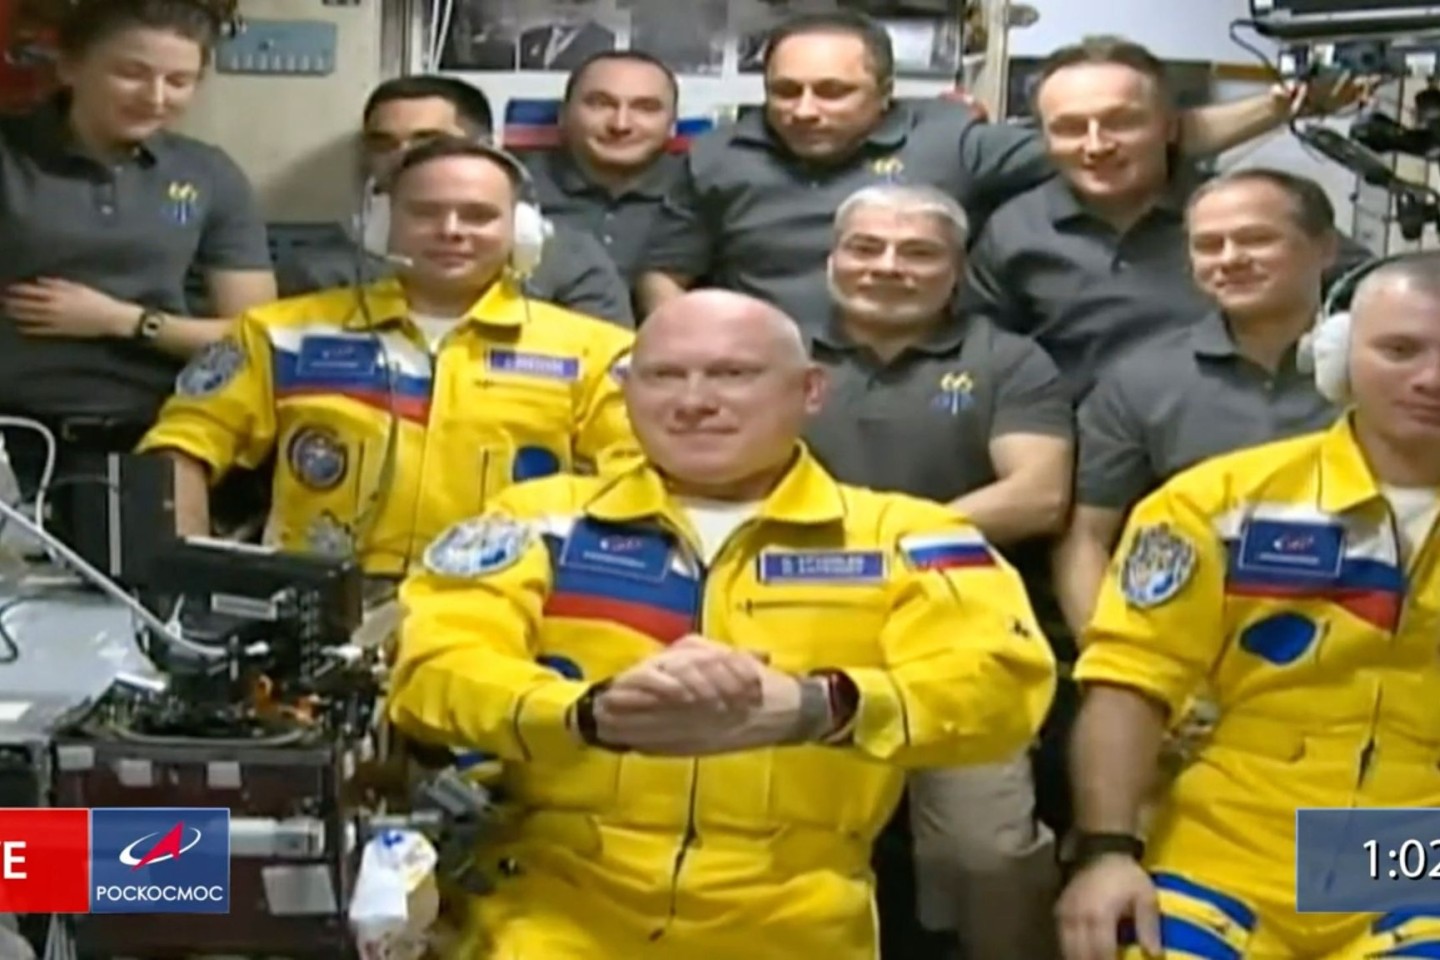 Sicher angekommen: Die drei Kosmonauten sind in Empfang genommen worden. Das Videostandbild wurde von Roskosmos zur Verfügung gestellt.